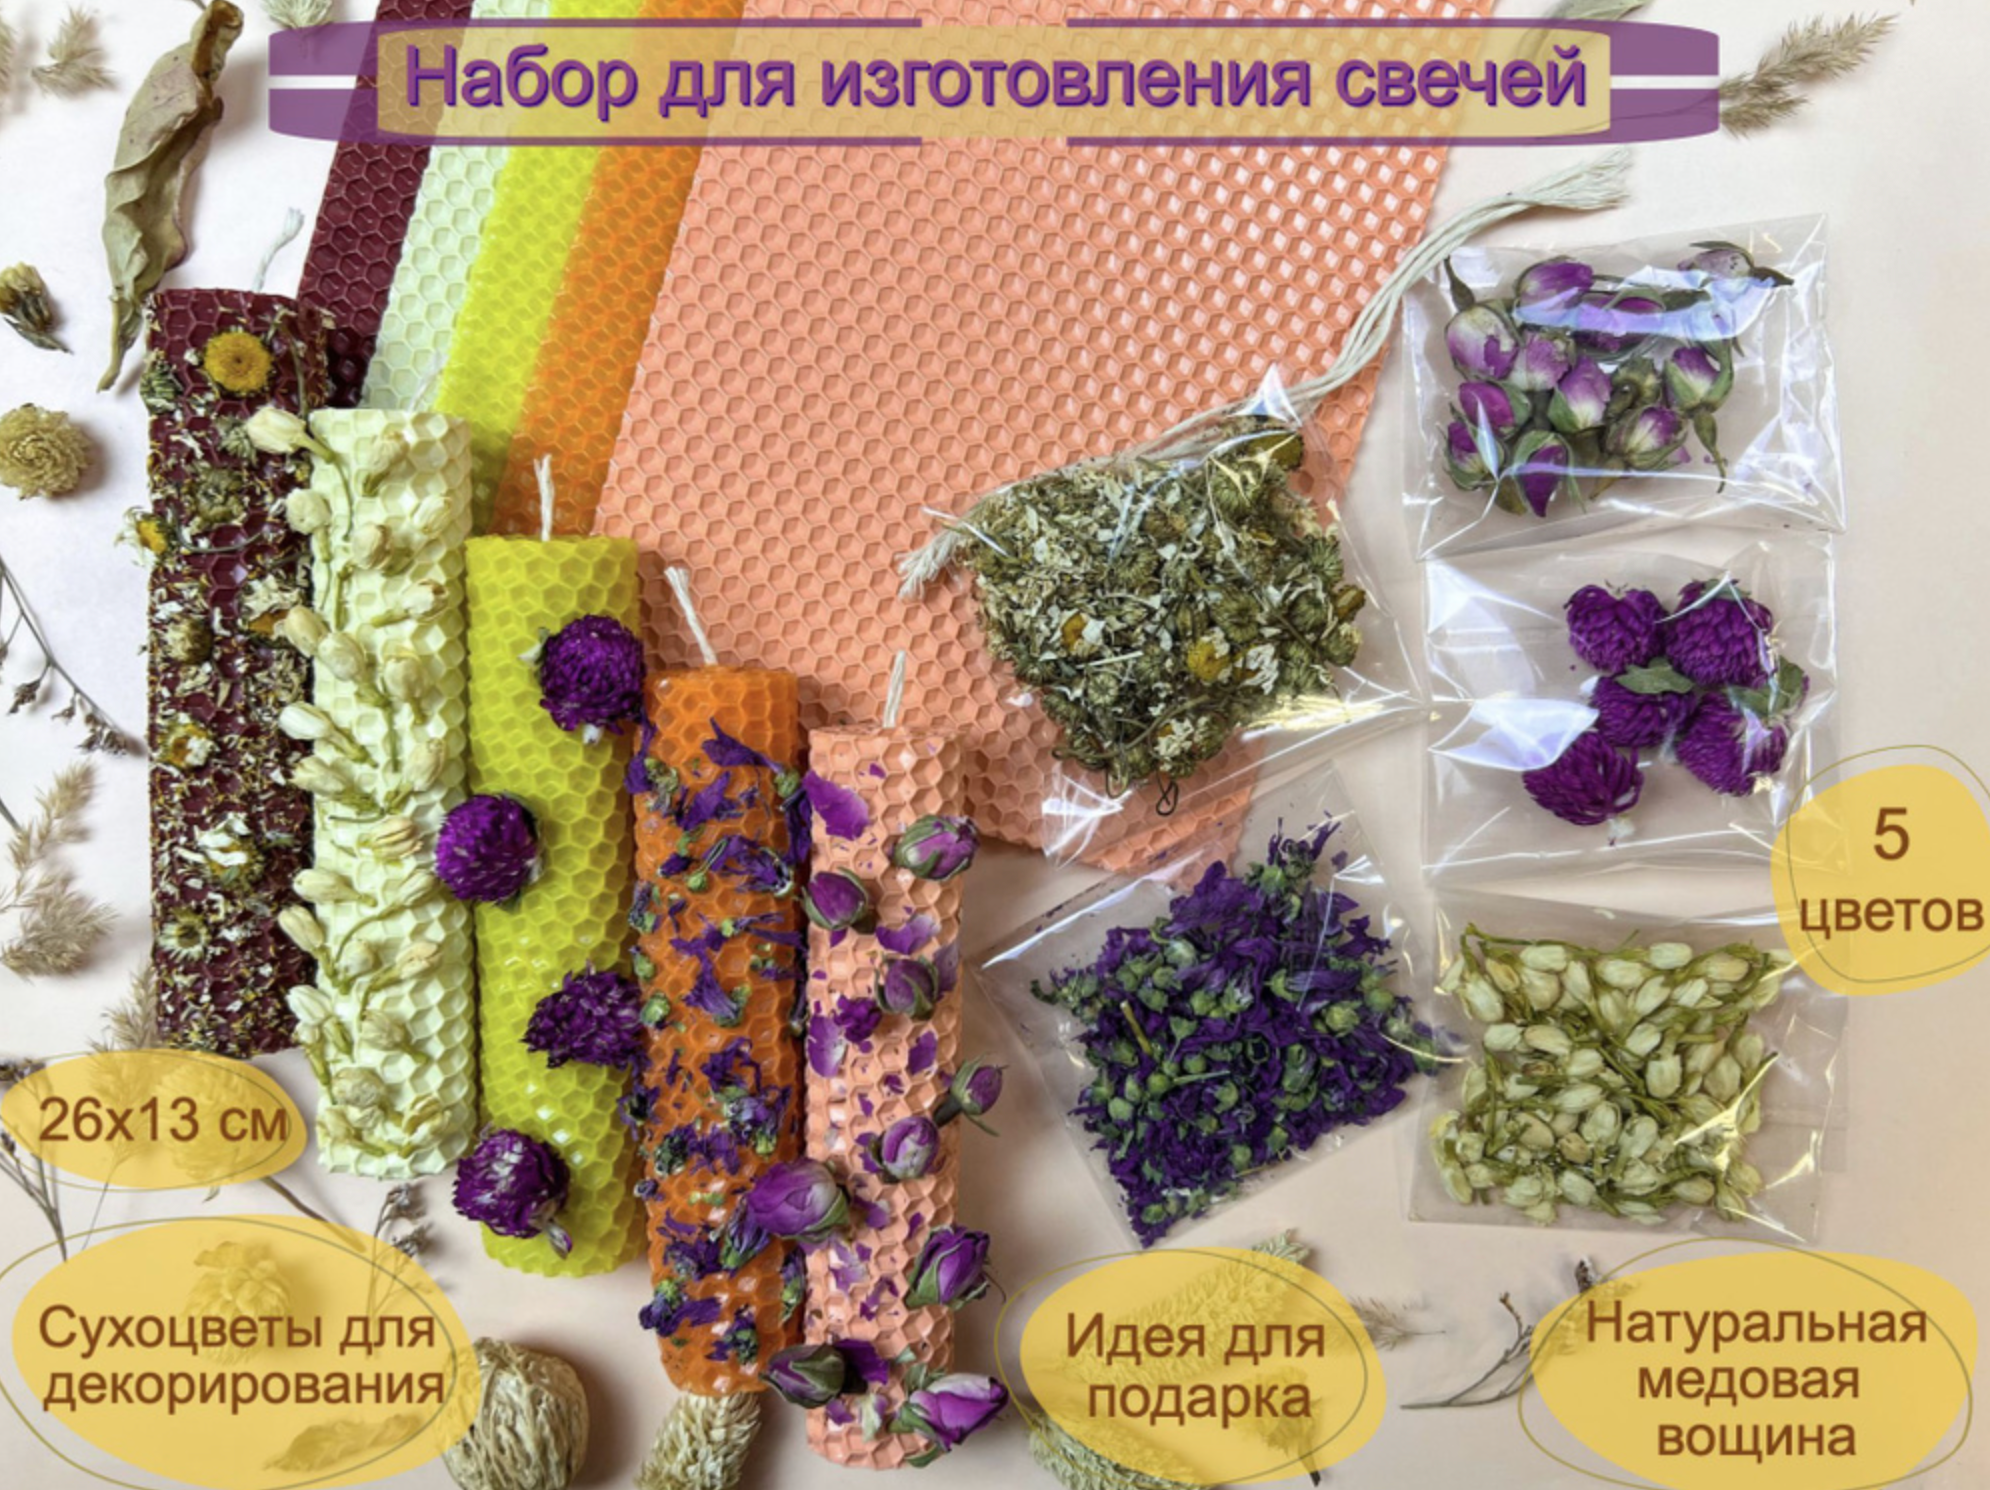 Подарочный набор для изготовления свечей с сухоцветами